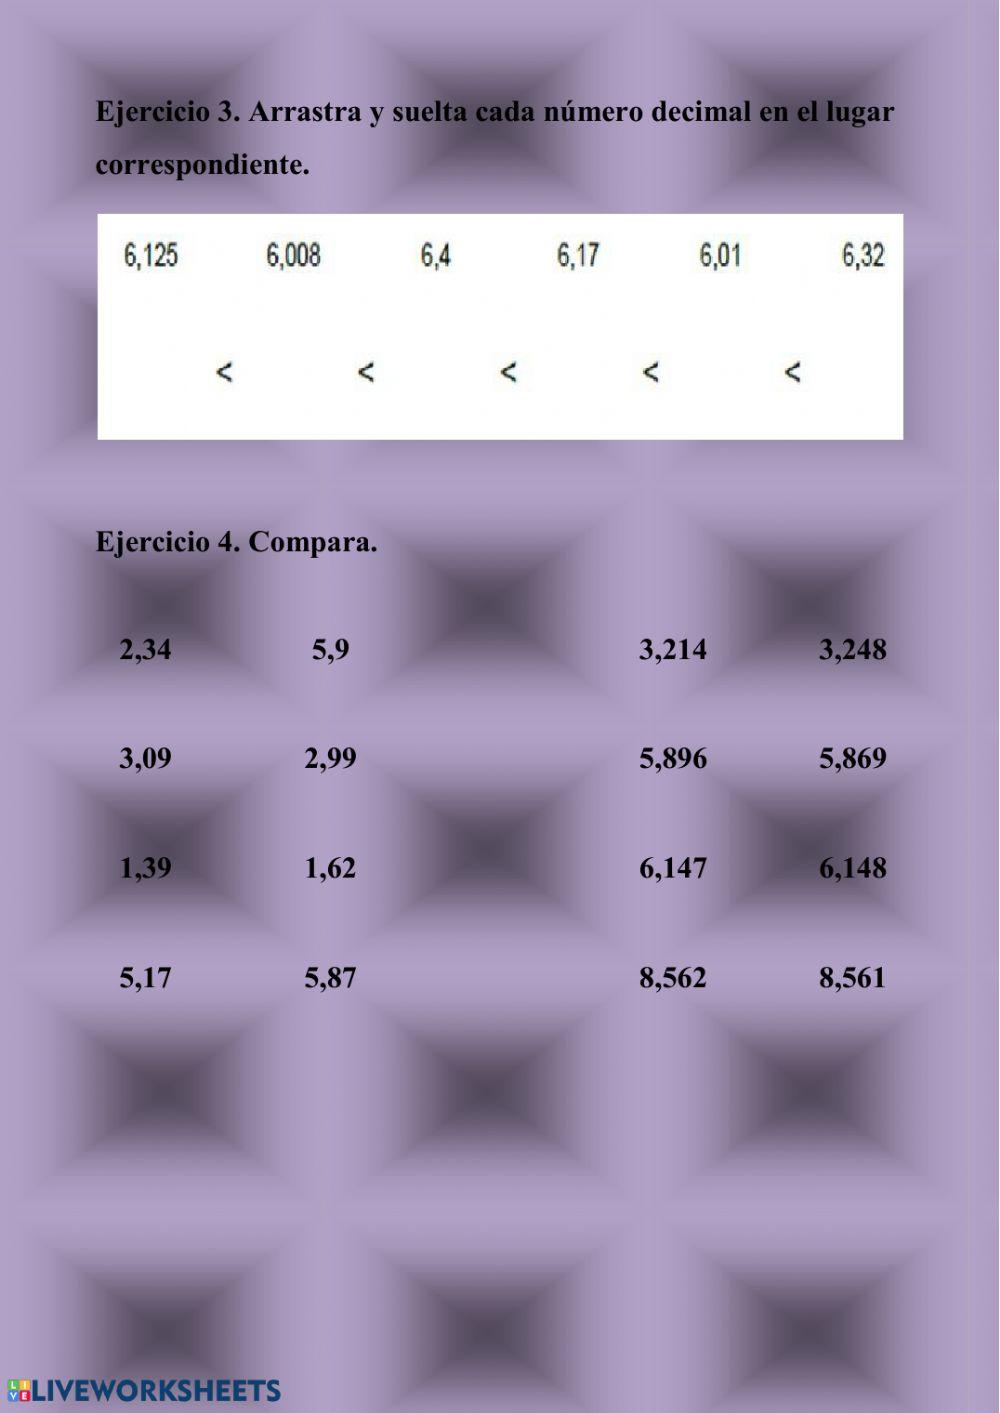 Comparación de números decimales